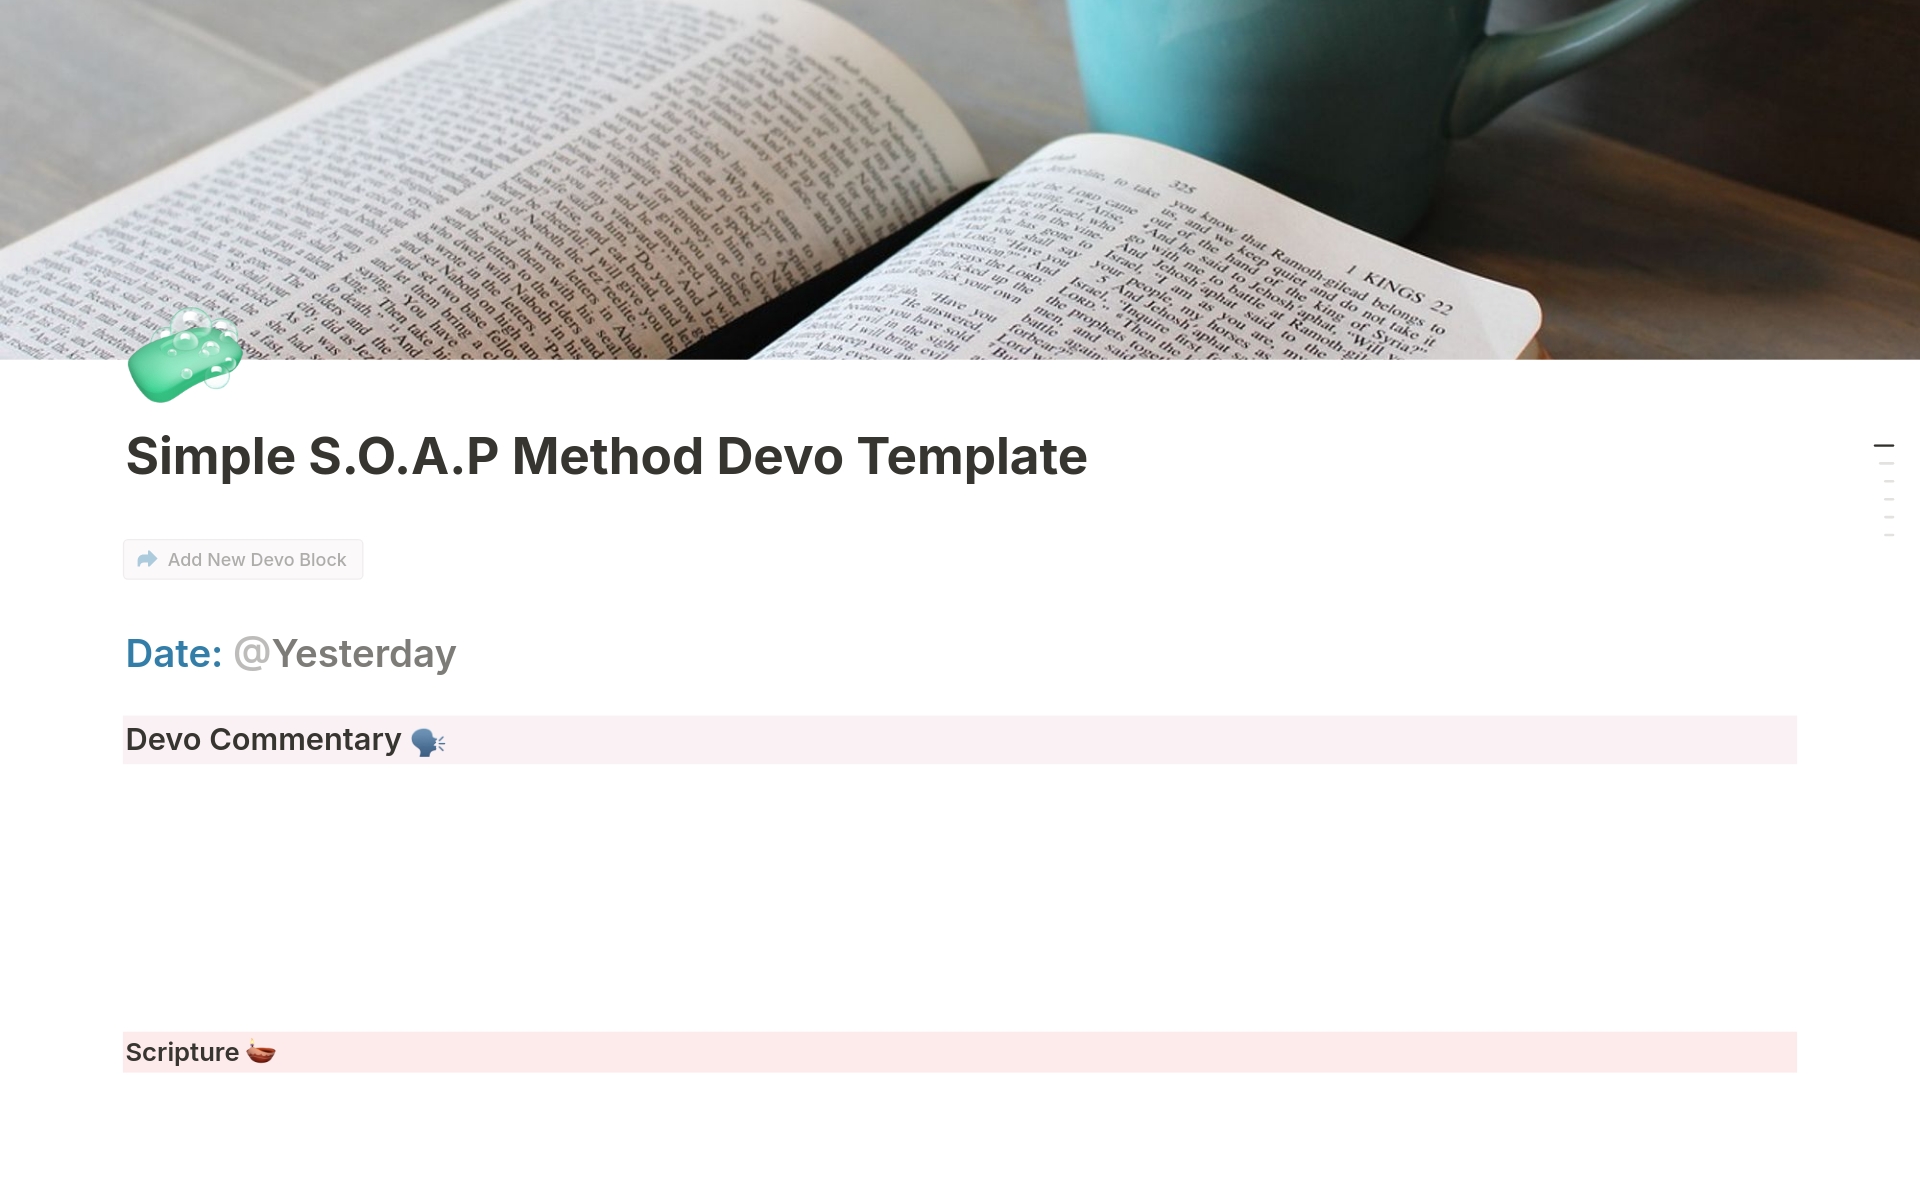 Vista previa de una plantilla para Simple S.O.A.P Method Journal